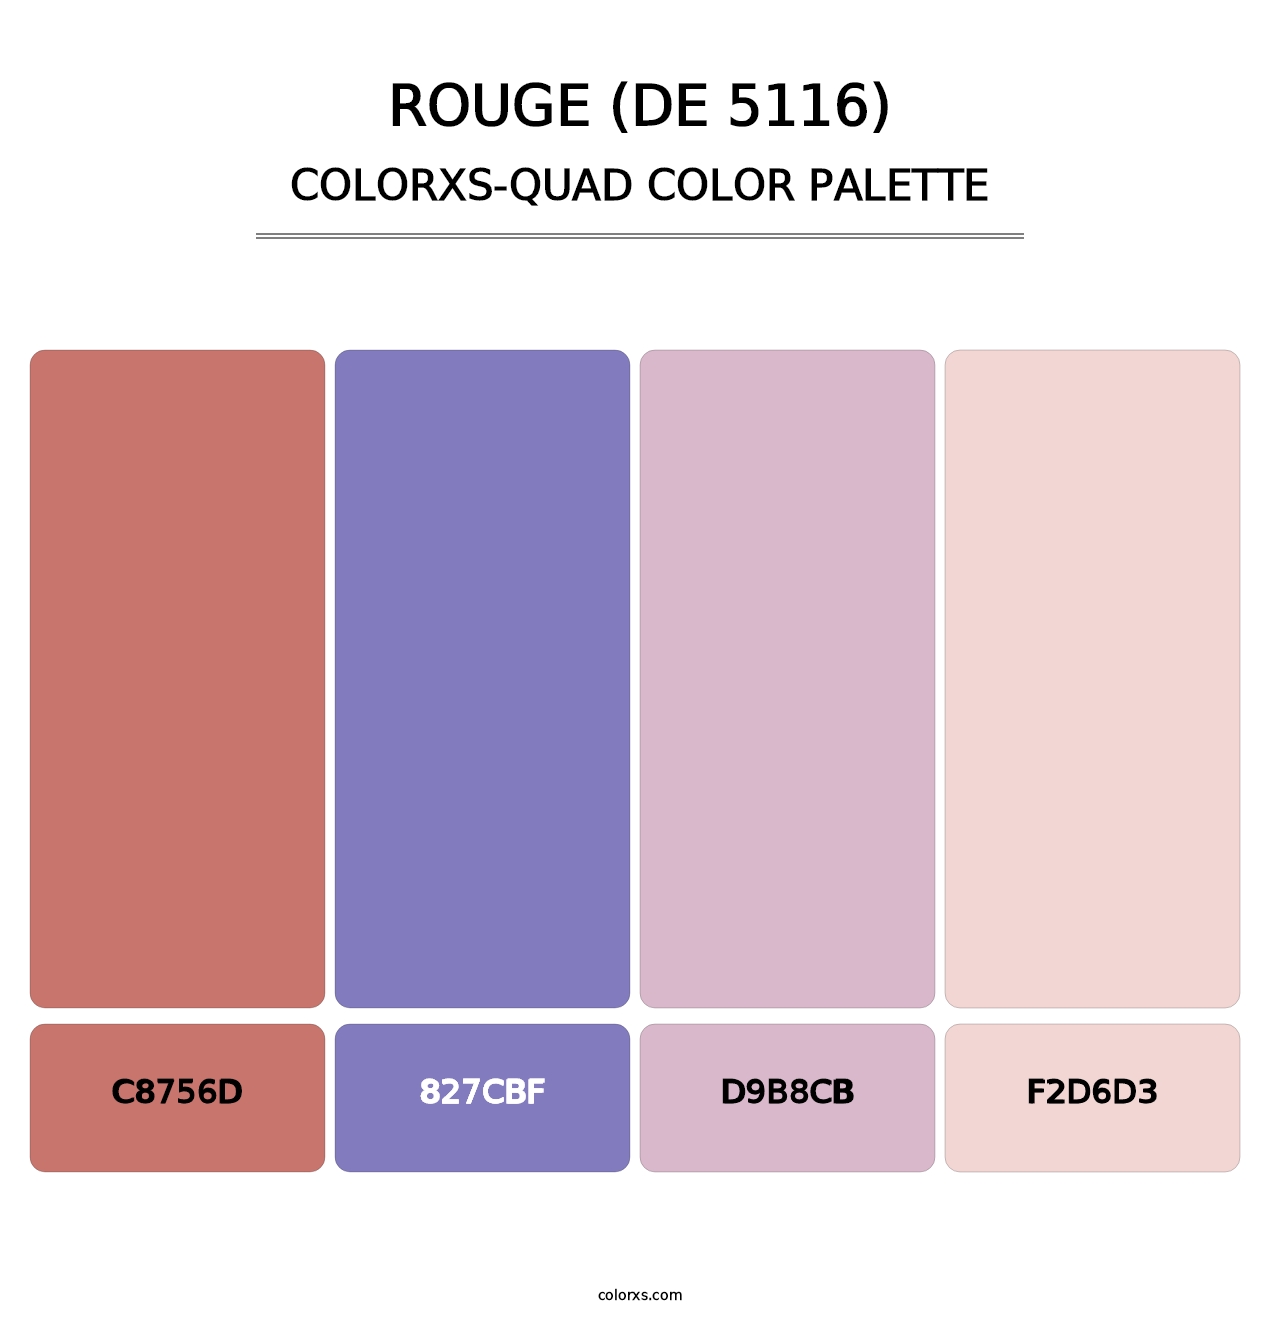 Rouge (DE 5116) - Colorxs Quad Palette